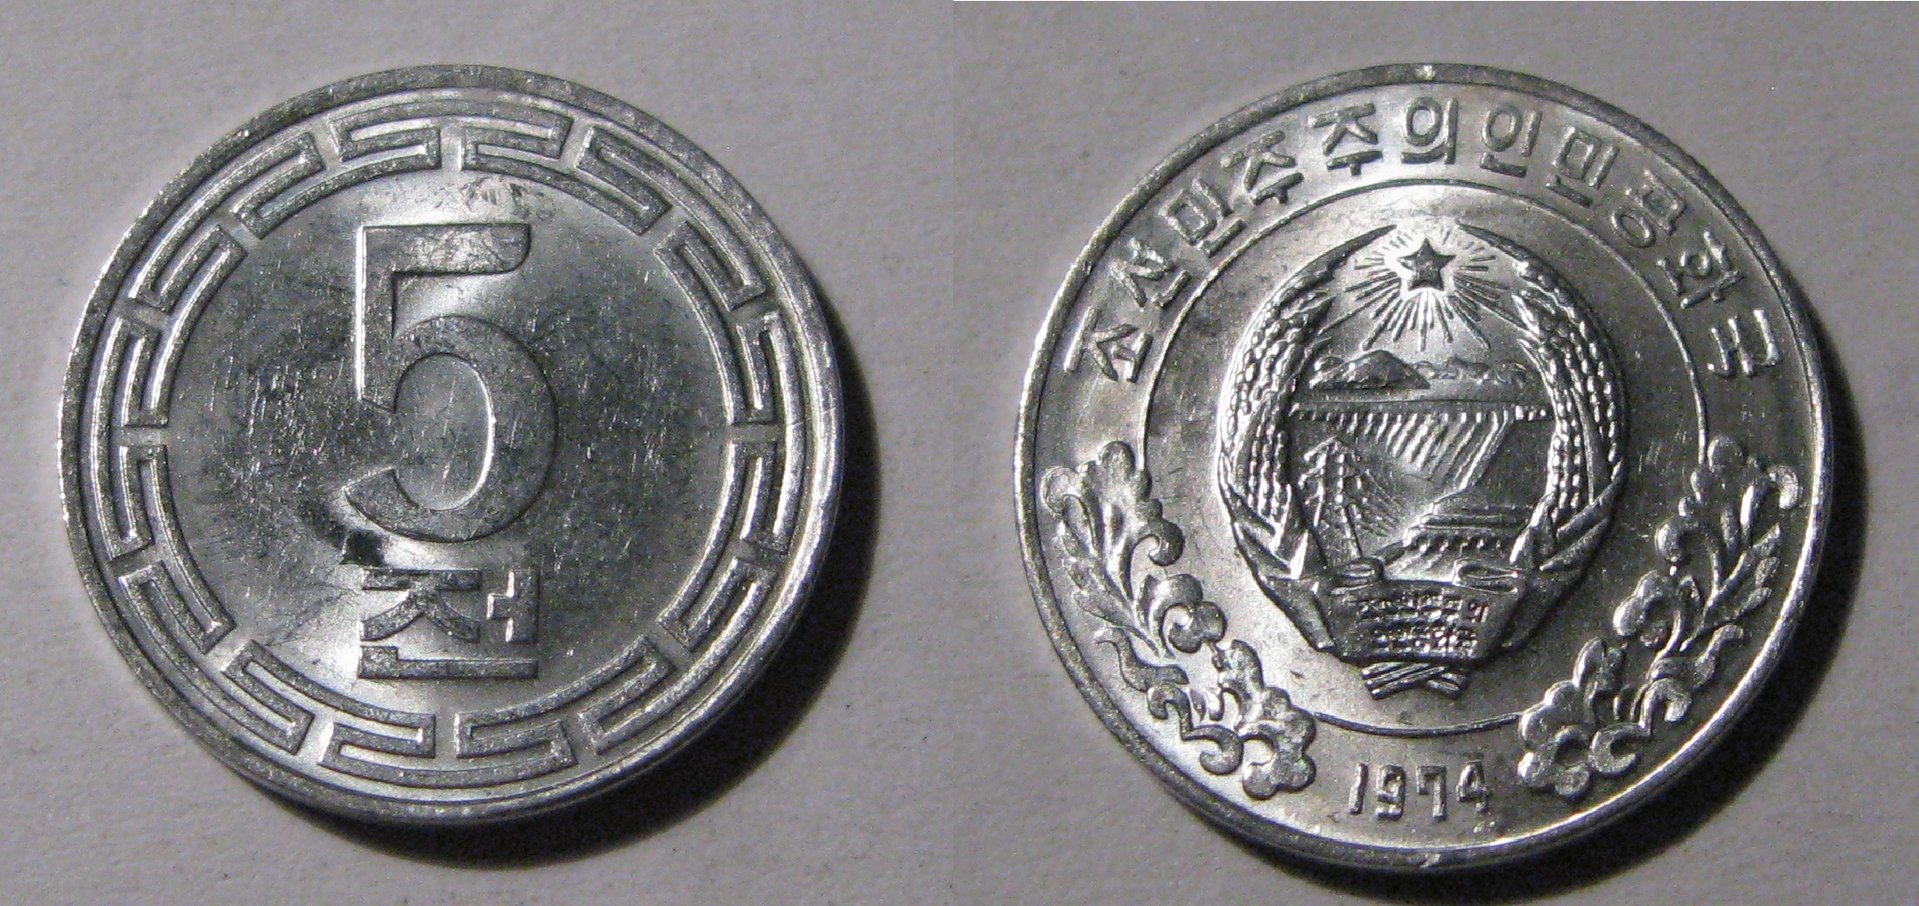 DPRK 5 Chon Coin.jpg